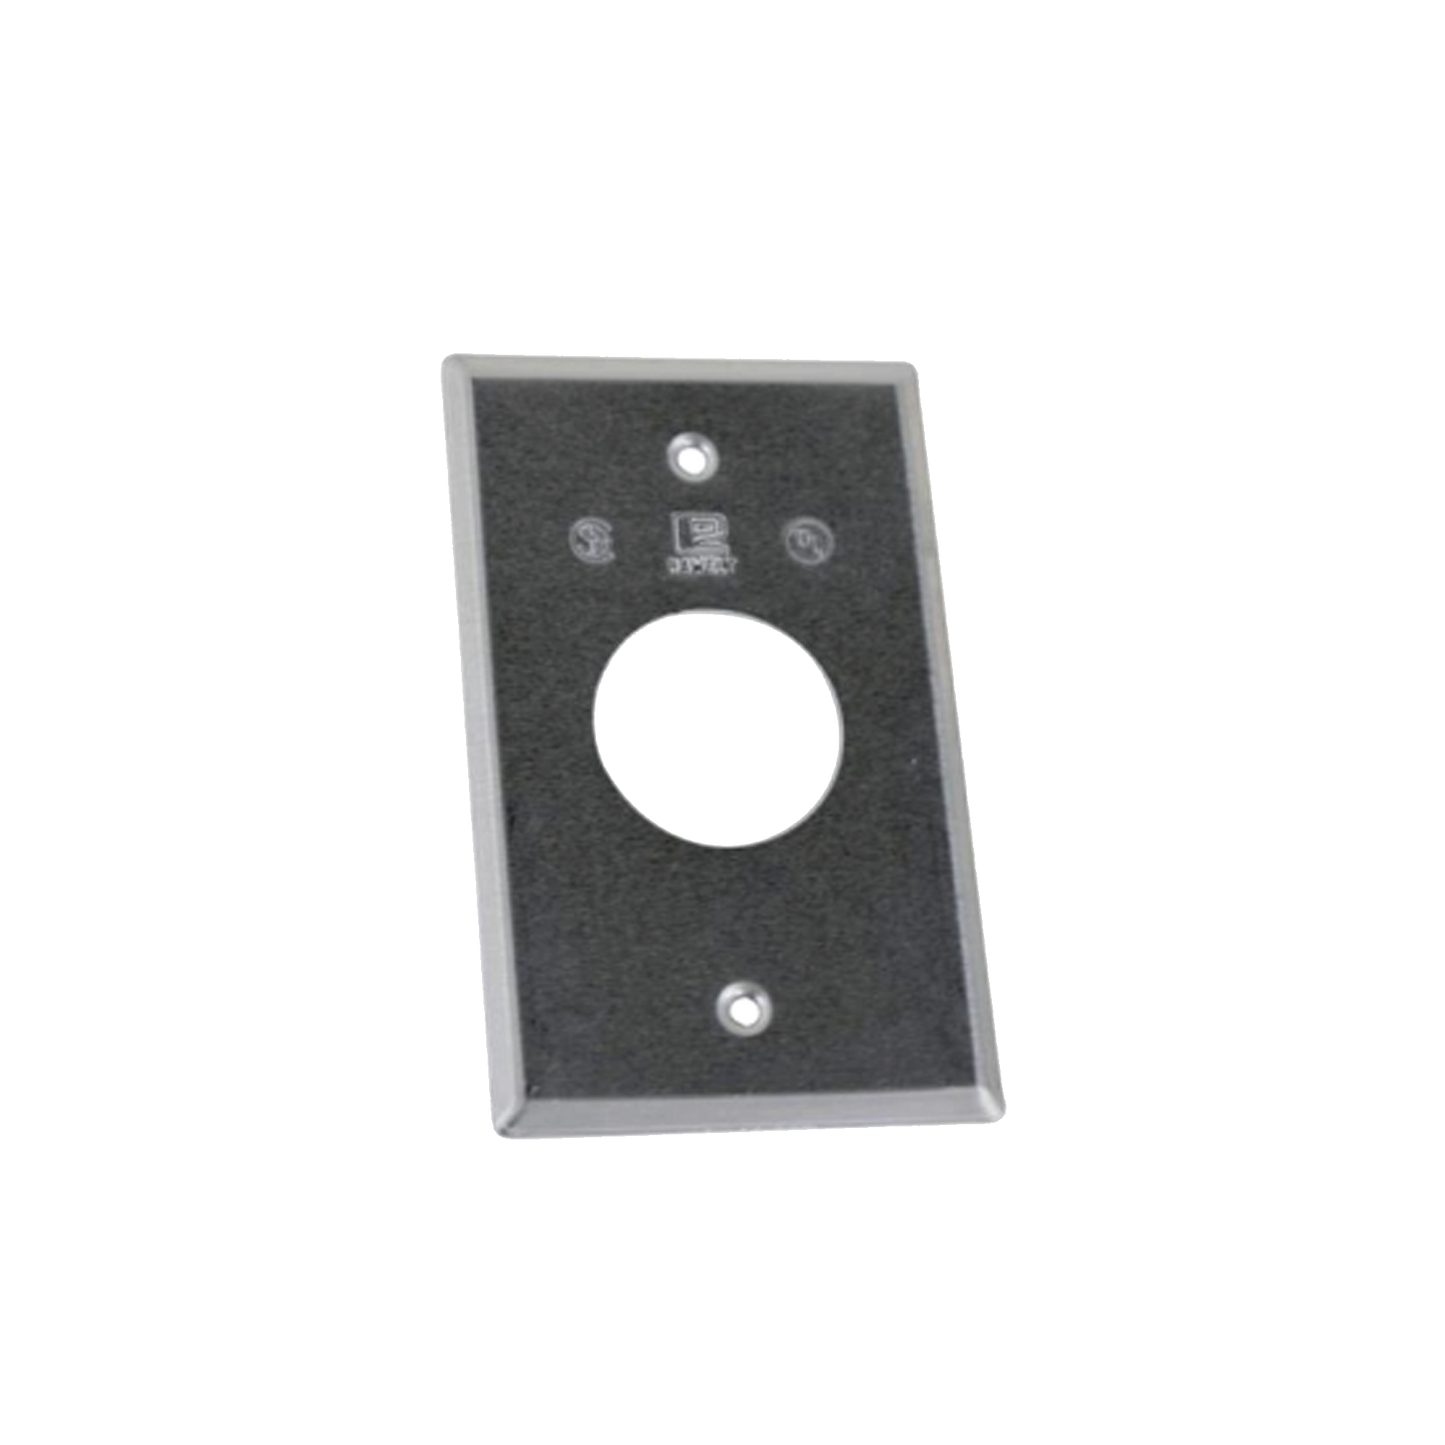 Tapa rectangular aluminio para contacto de 35.2 mm, tipo RR a prueba de intemperie.